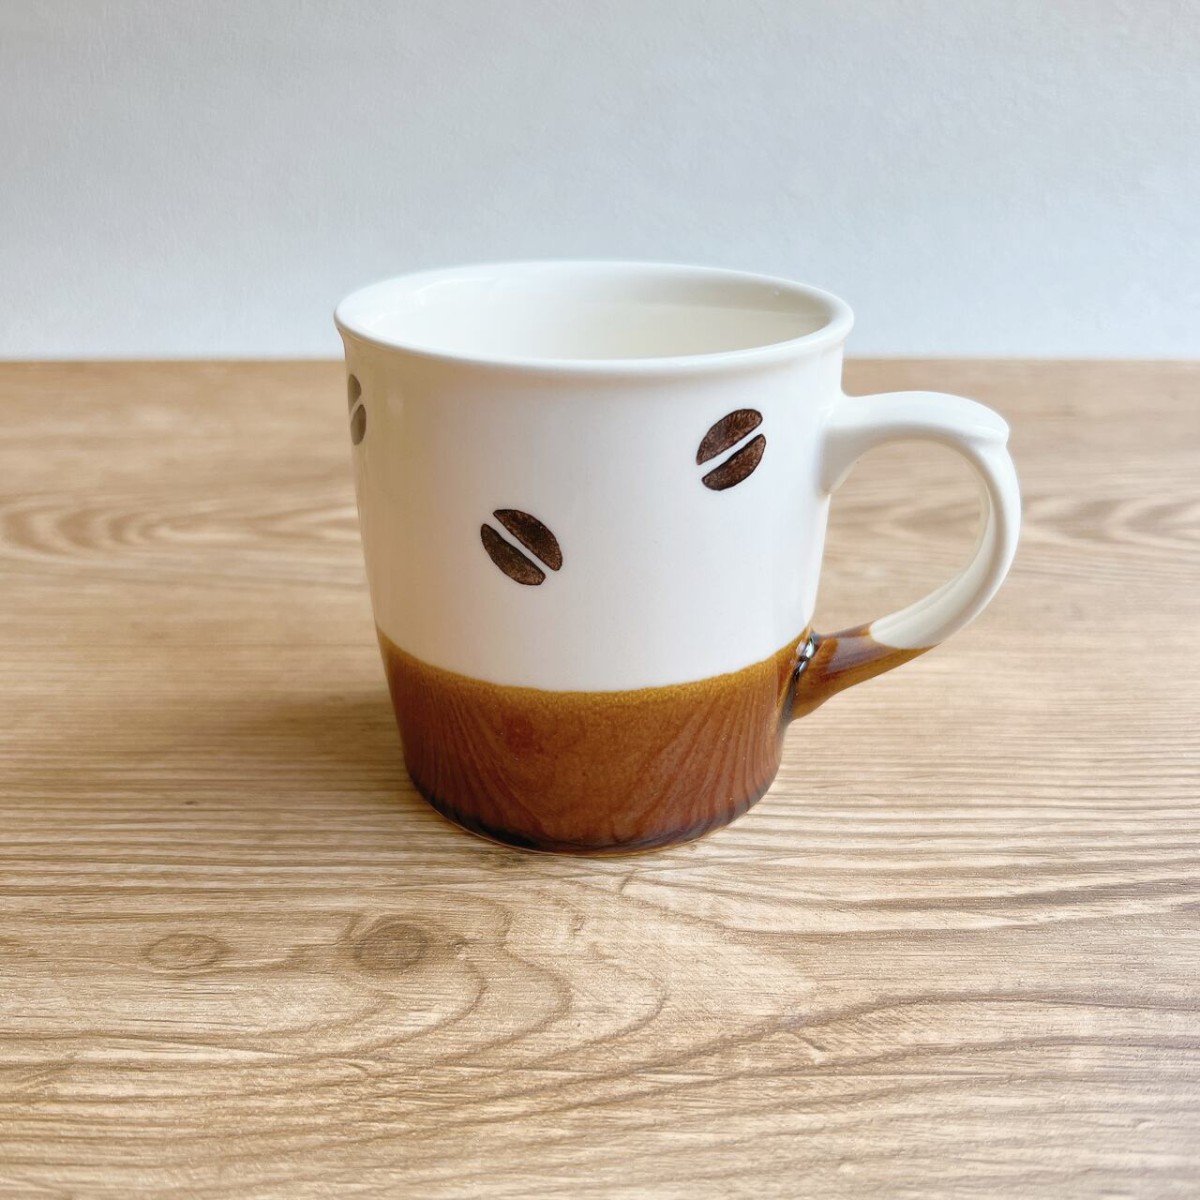 コーヒー豆柄 マグカップ BEANS 2 美濃焼 日本製 ブラウン ホワイト カフェ ドット coffee 珈琲豆